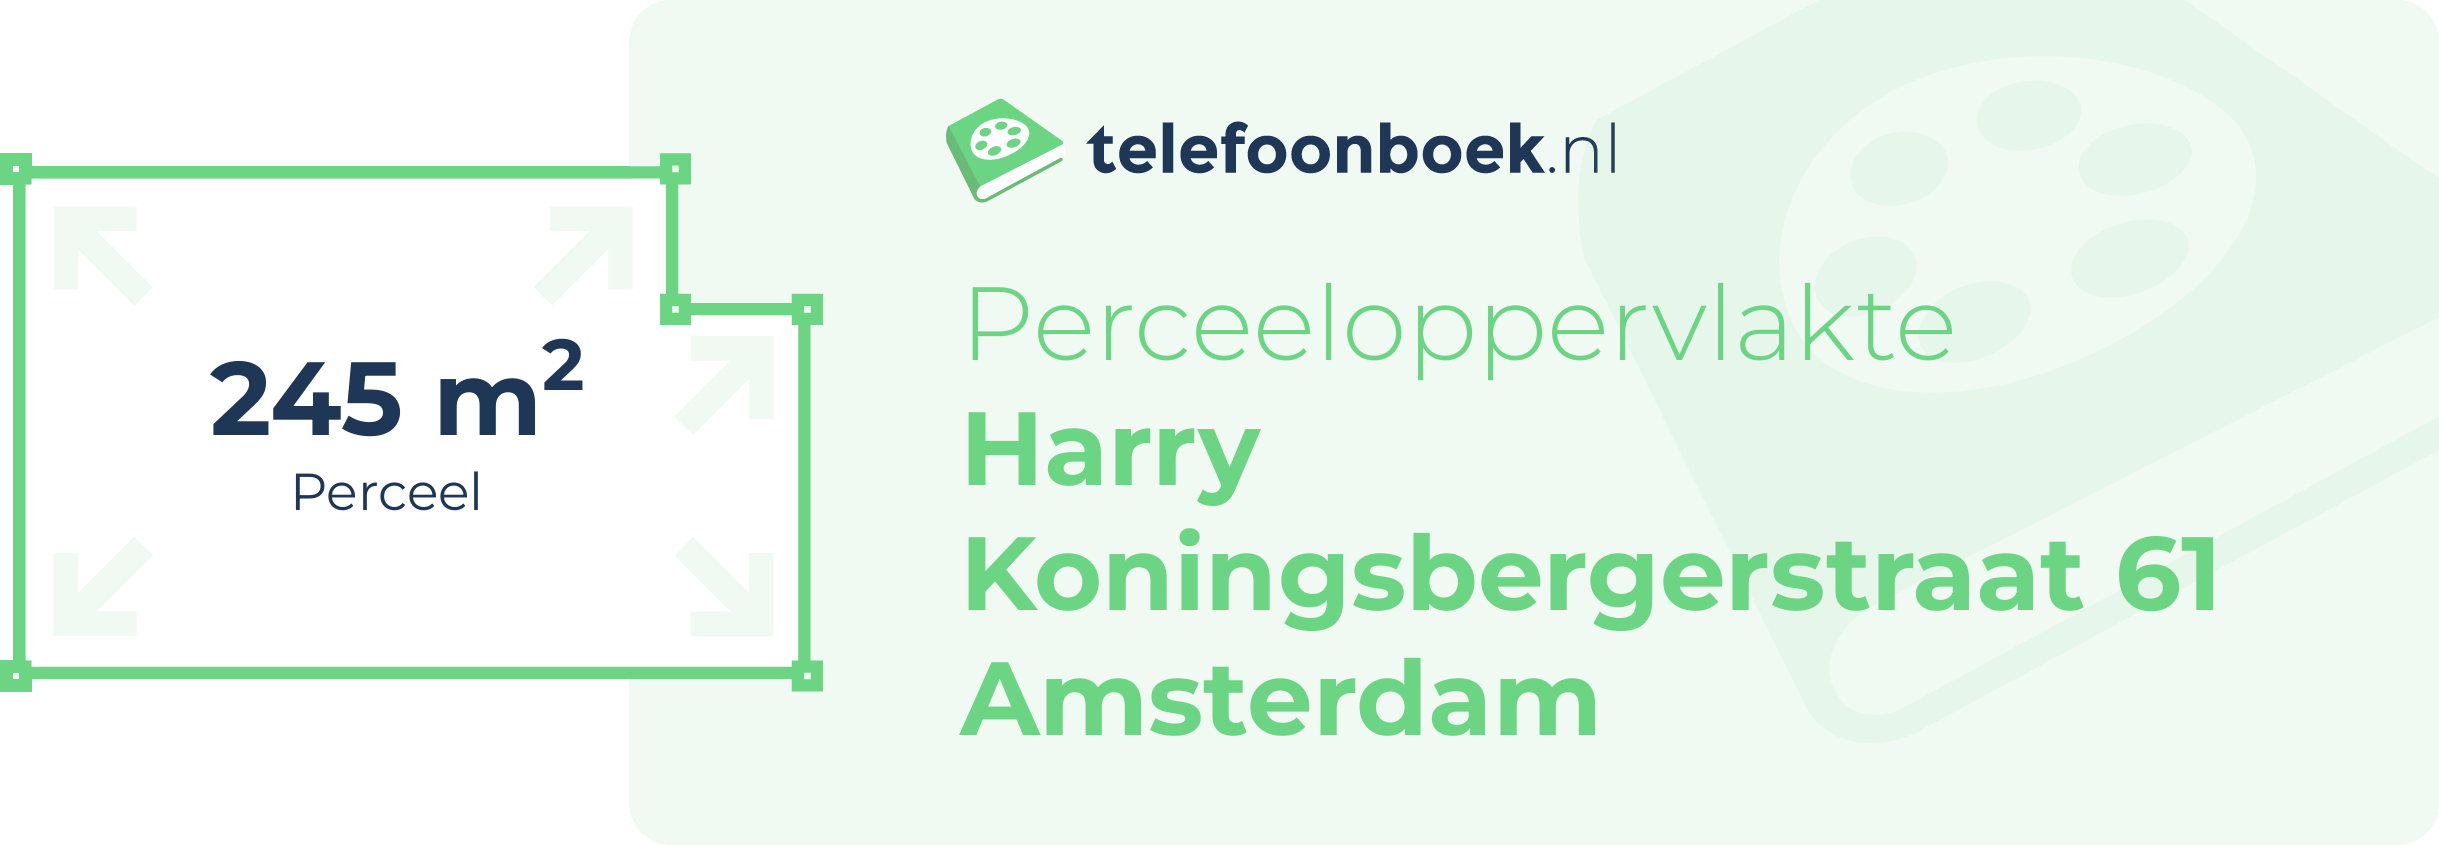 Perceeloppervlakte Harry Koningsbergerstraat 61 Amsterdam